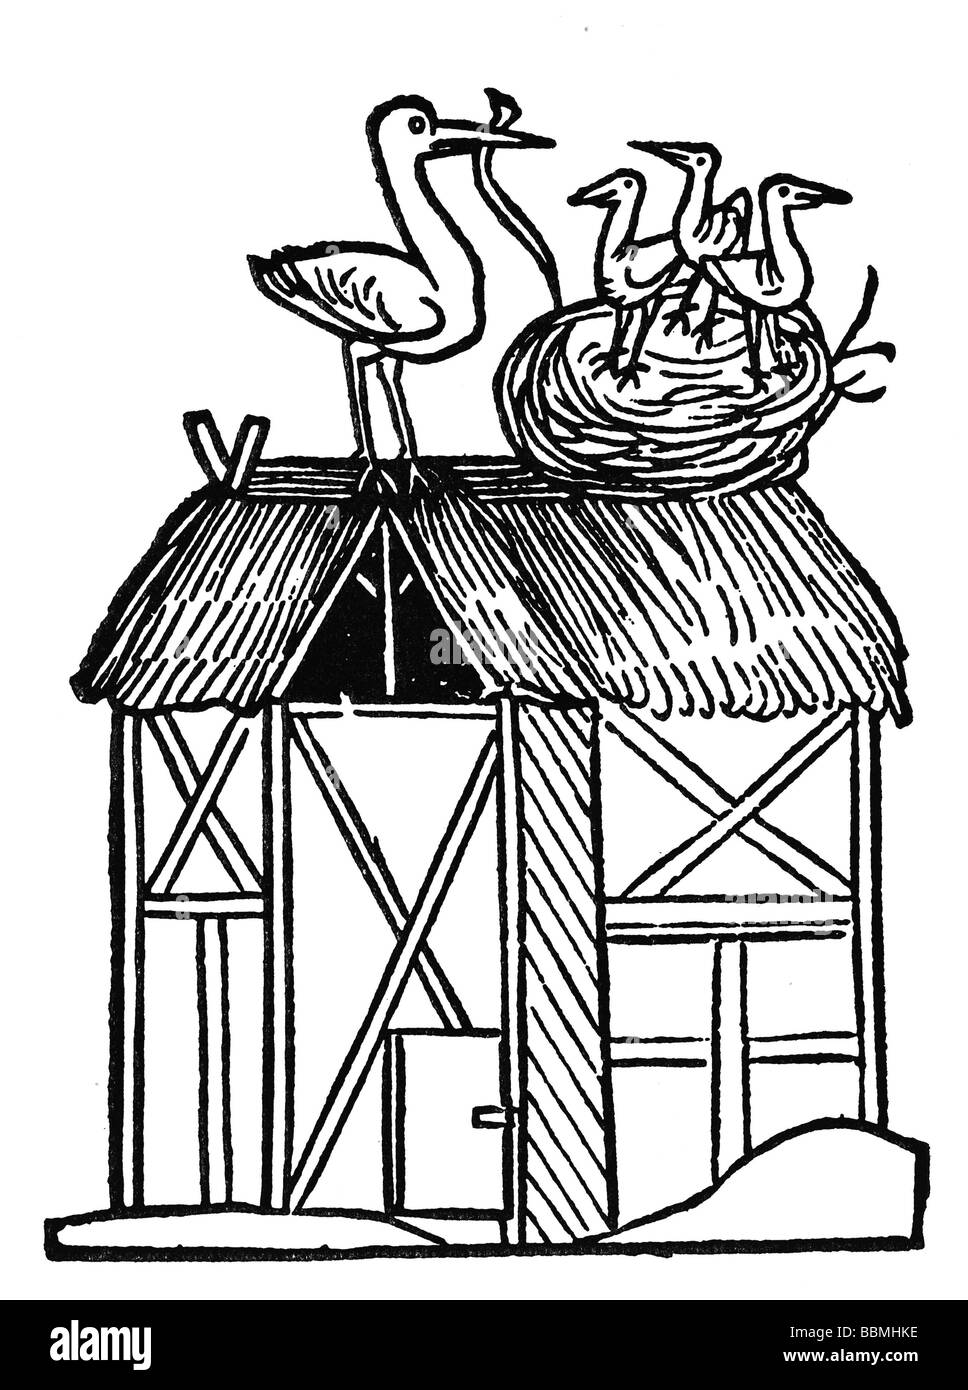 Stork está alimentando a su joven con una serpiente, talla de madera desde los tiempos medievales Foto de stock